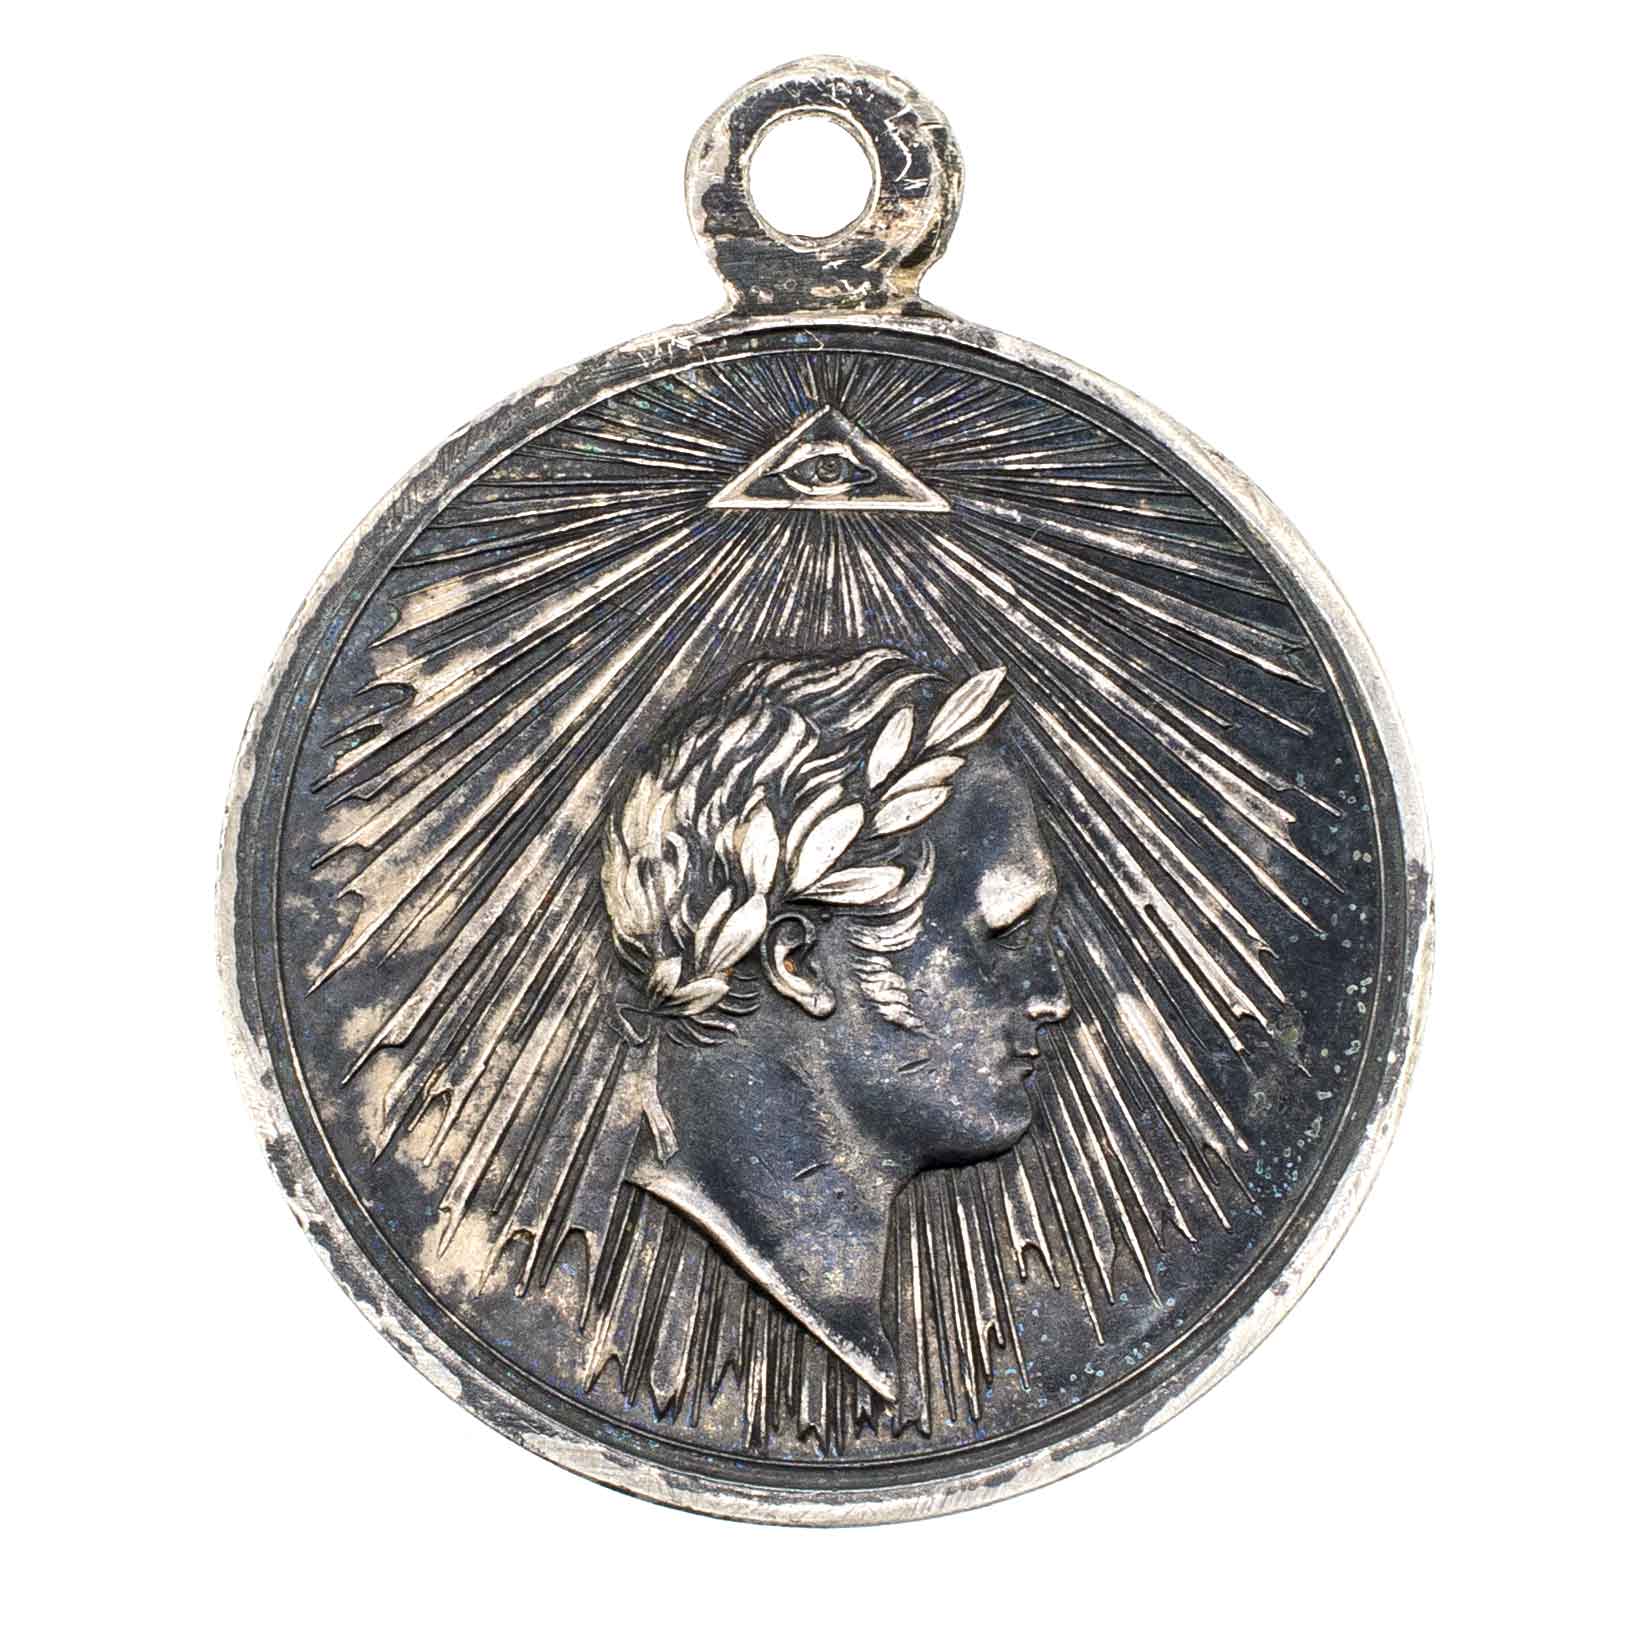 Медаль "За взятие Парижа 19 марта 1814 г"